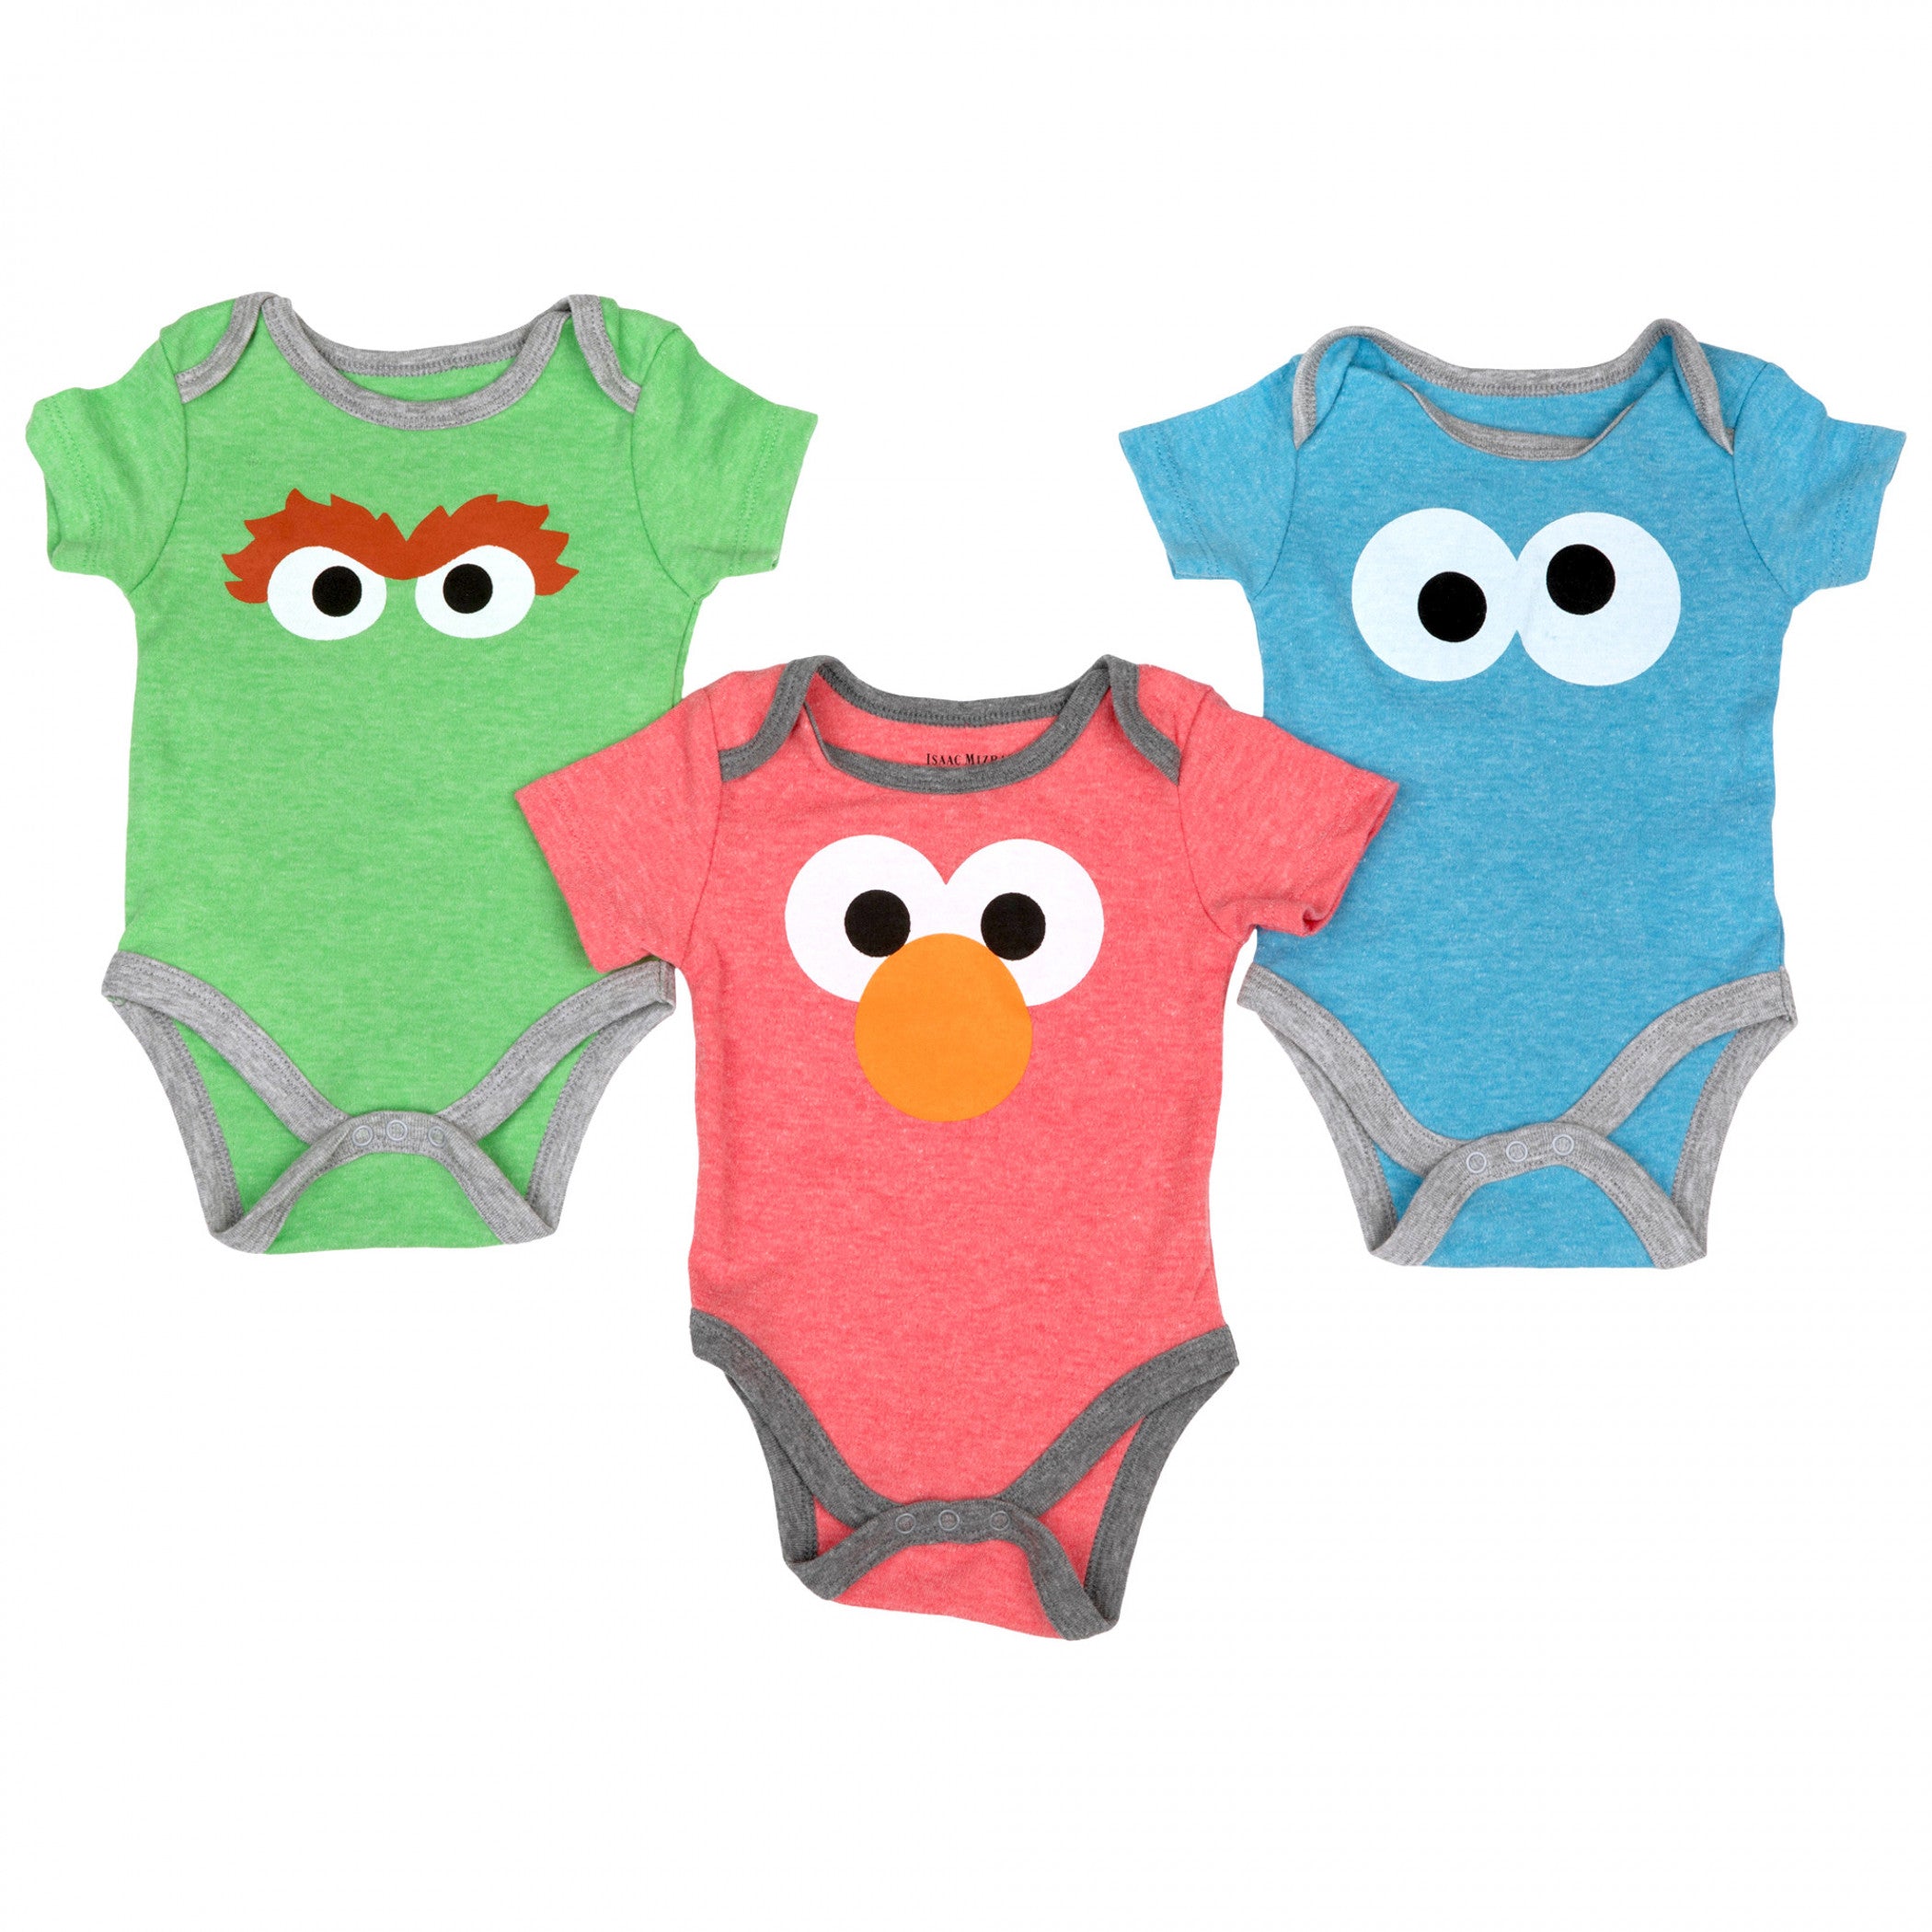 title:Sesame Street Elmo, Oscar, and Cookie Monster Infant Bodysuit 3-Pack;color:Multi-Color